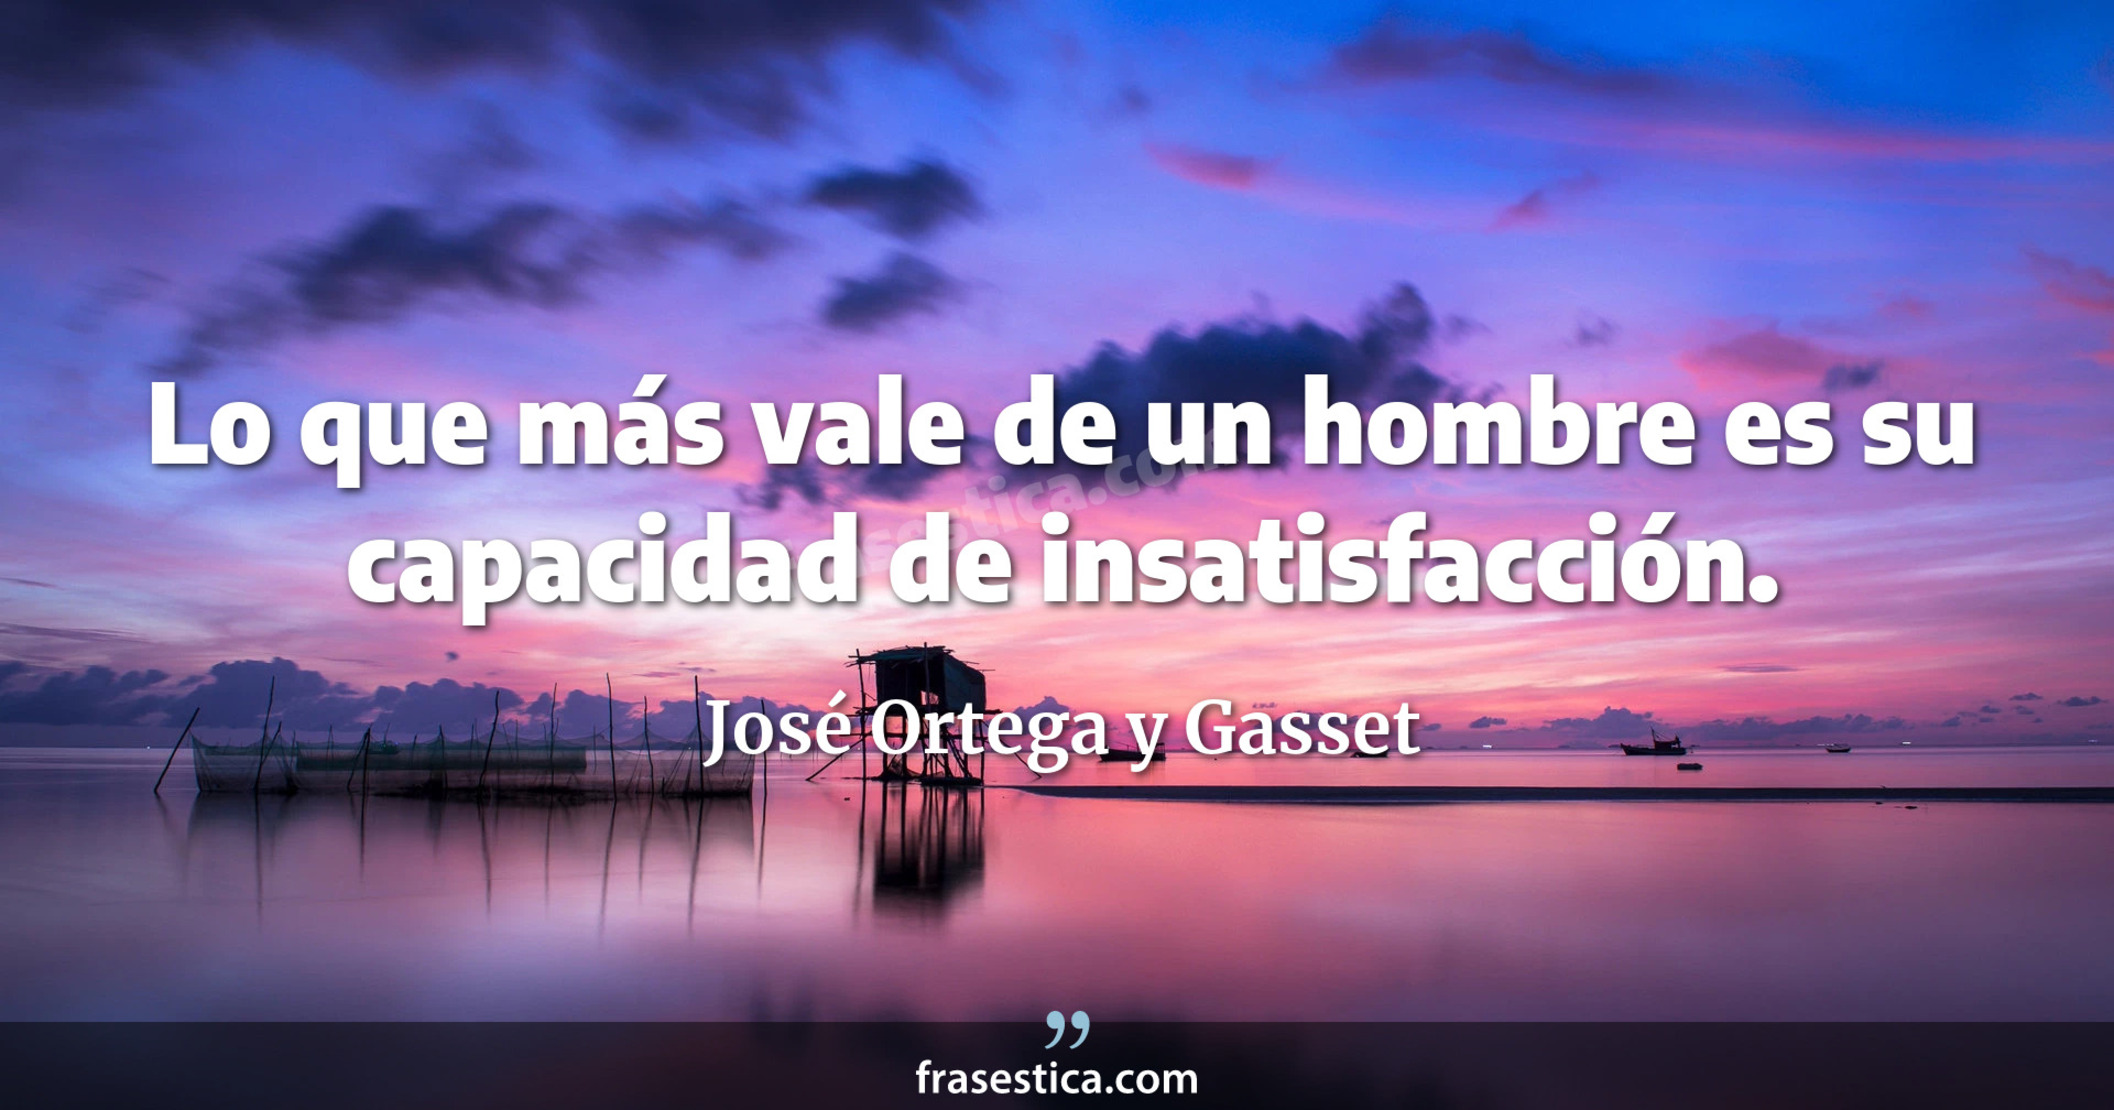 Lo que más vale de un hombre es su capacidad de insatisfacción. - José Ortega y Gasset